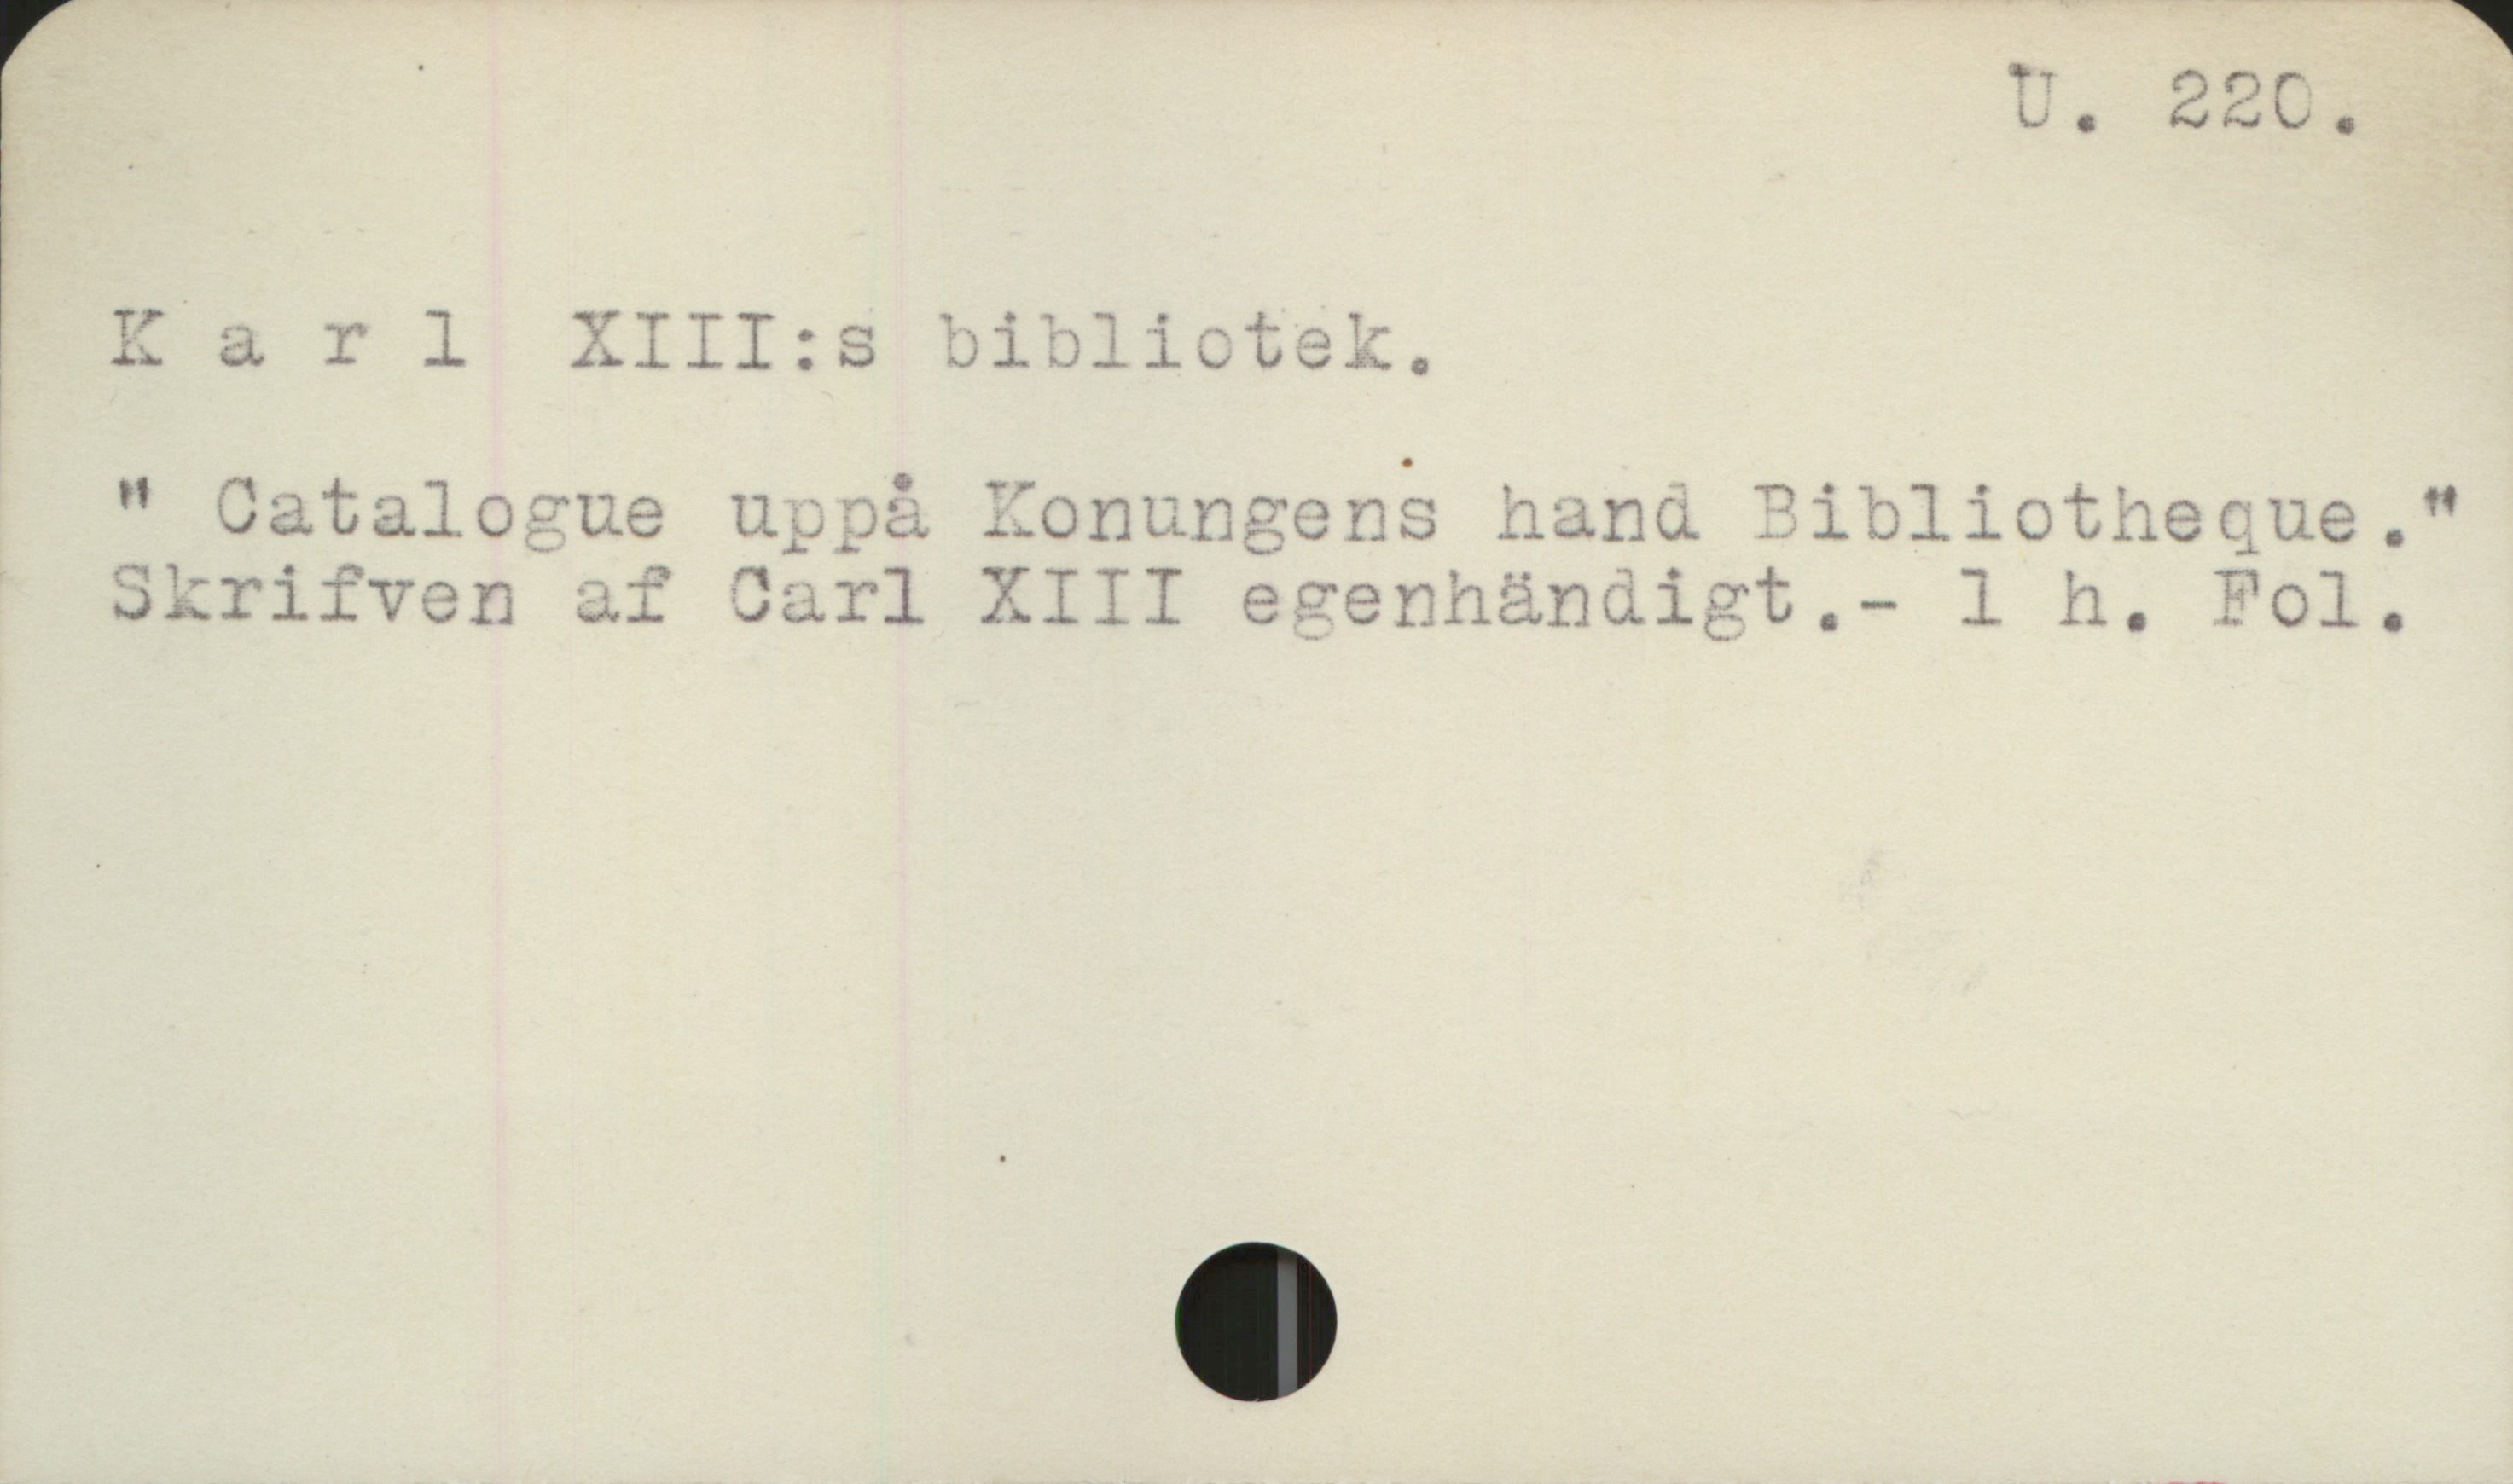 Karl XIII:s bibliotek U 220 

Karl XIII:s bibliotek

"Catalogue uppå Konungens hand Bibliotheque."
Skrifven af Carl XIII egenhändigt.           - 1 h. Fol.